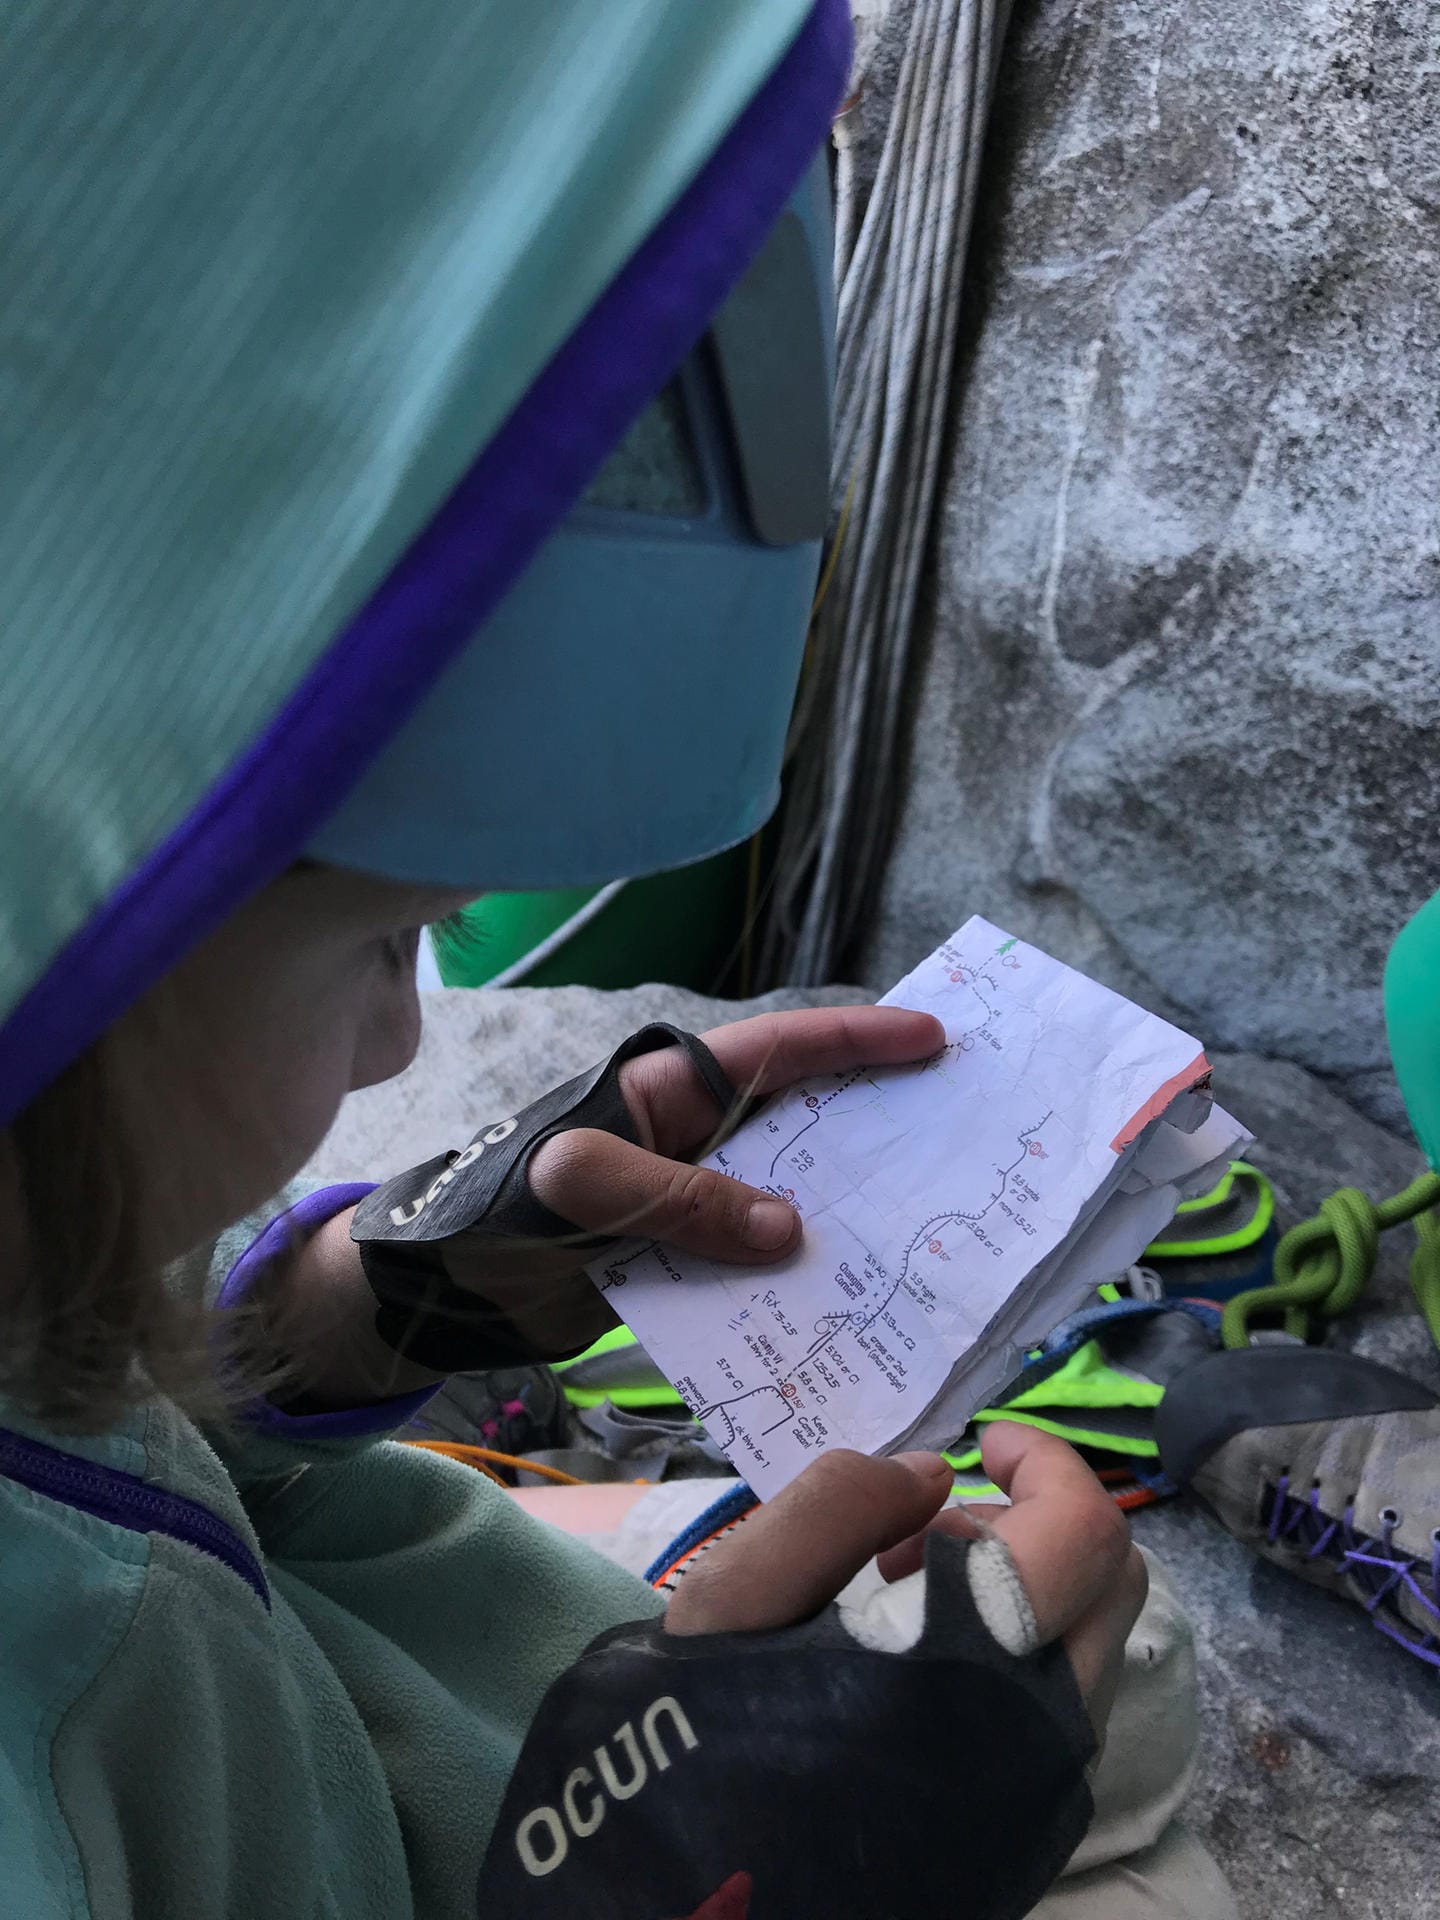 Selah Schneiter schaut sich ihre Notizen an. Ihr Vater erklärt ihr Schritt für Schritt, was sie beim Klettern beachten soll.